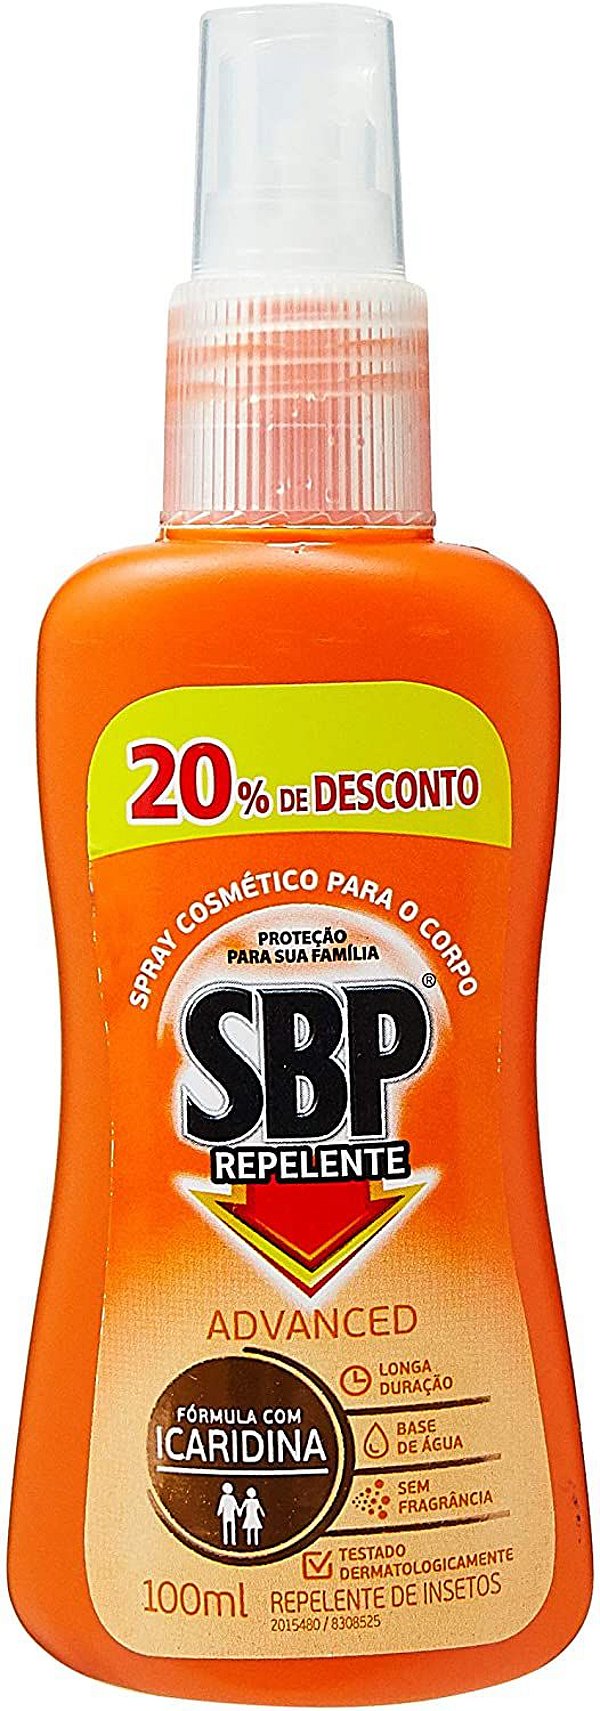 Repelente Spray SBP Advance 20% desconto 100ml